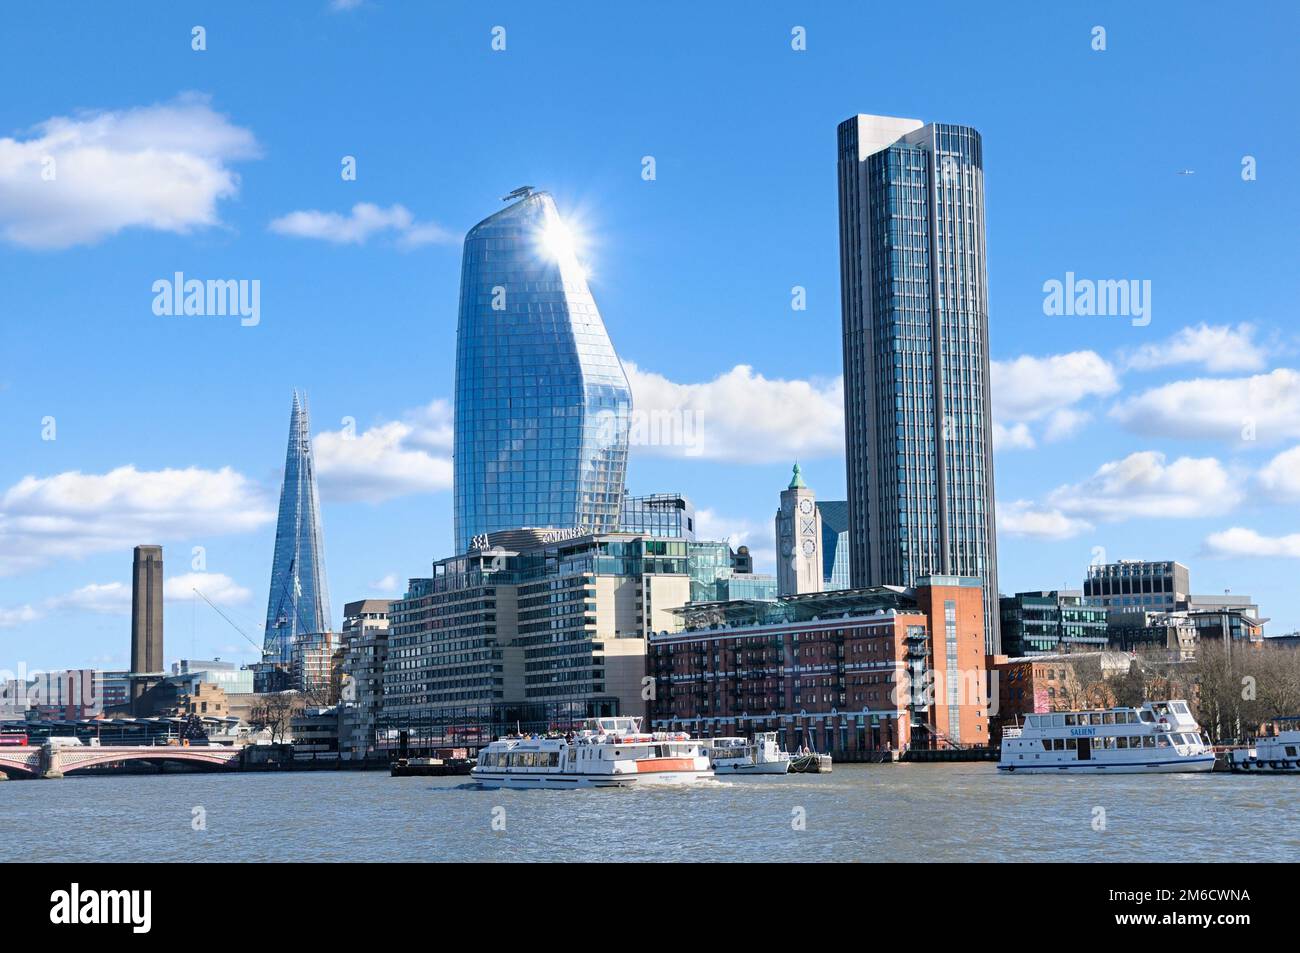 Vista sul Tamigi dallo skyline di Victoria Embankment of London con grattacieli - The Shard, One Blackfriars e South Bank Tower, Inghilterra, Regno Unito Foto Stock